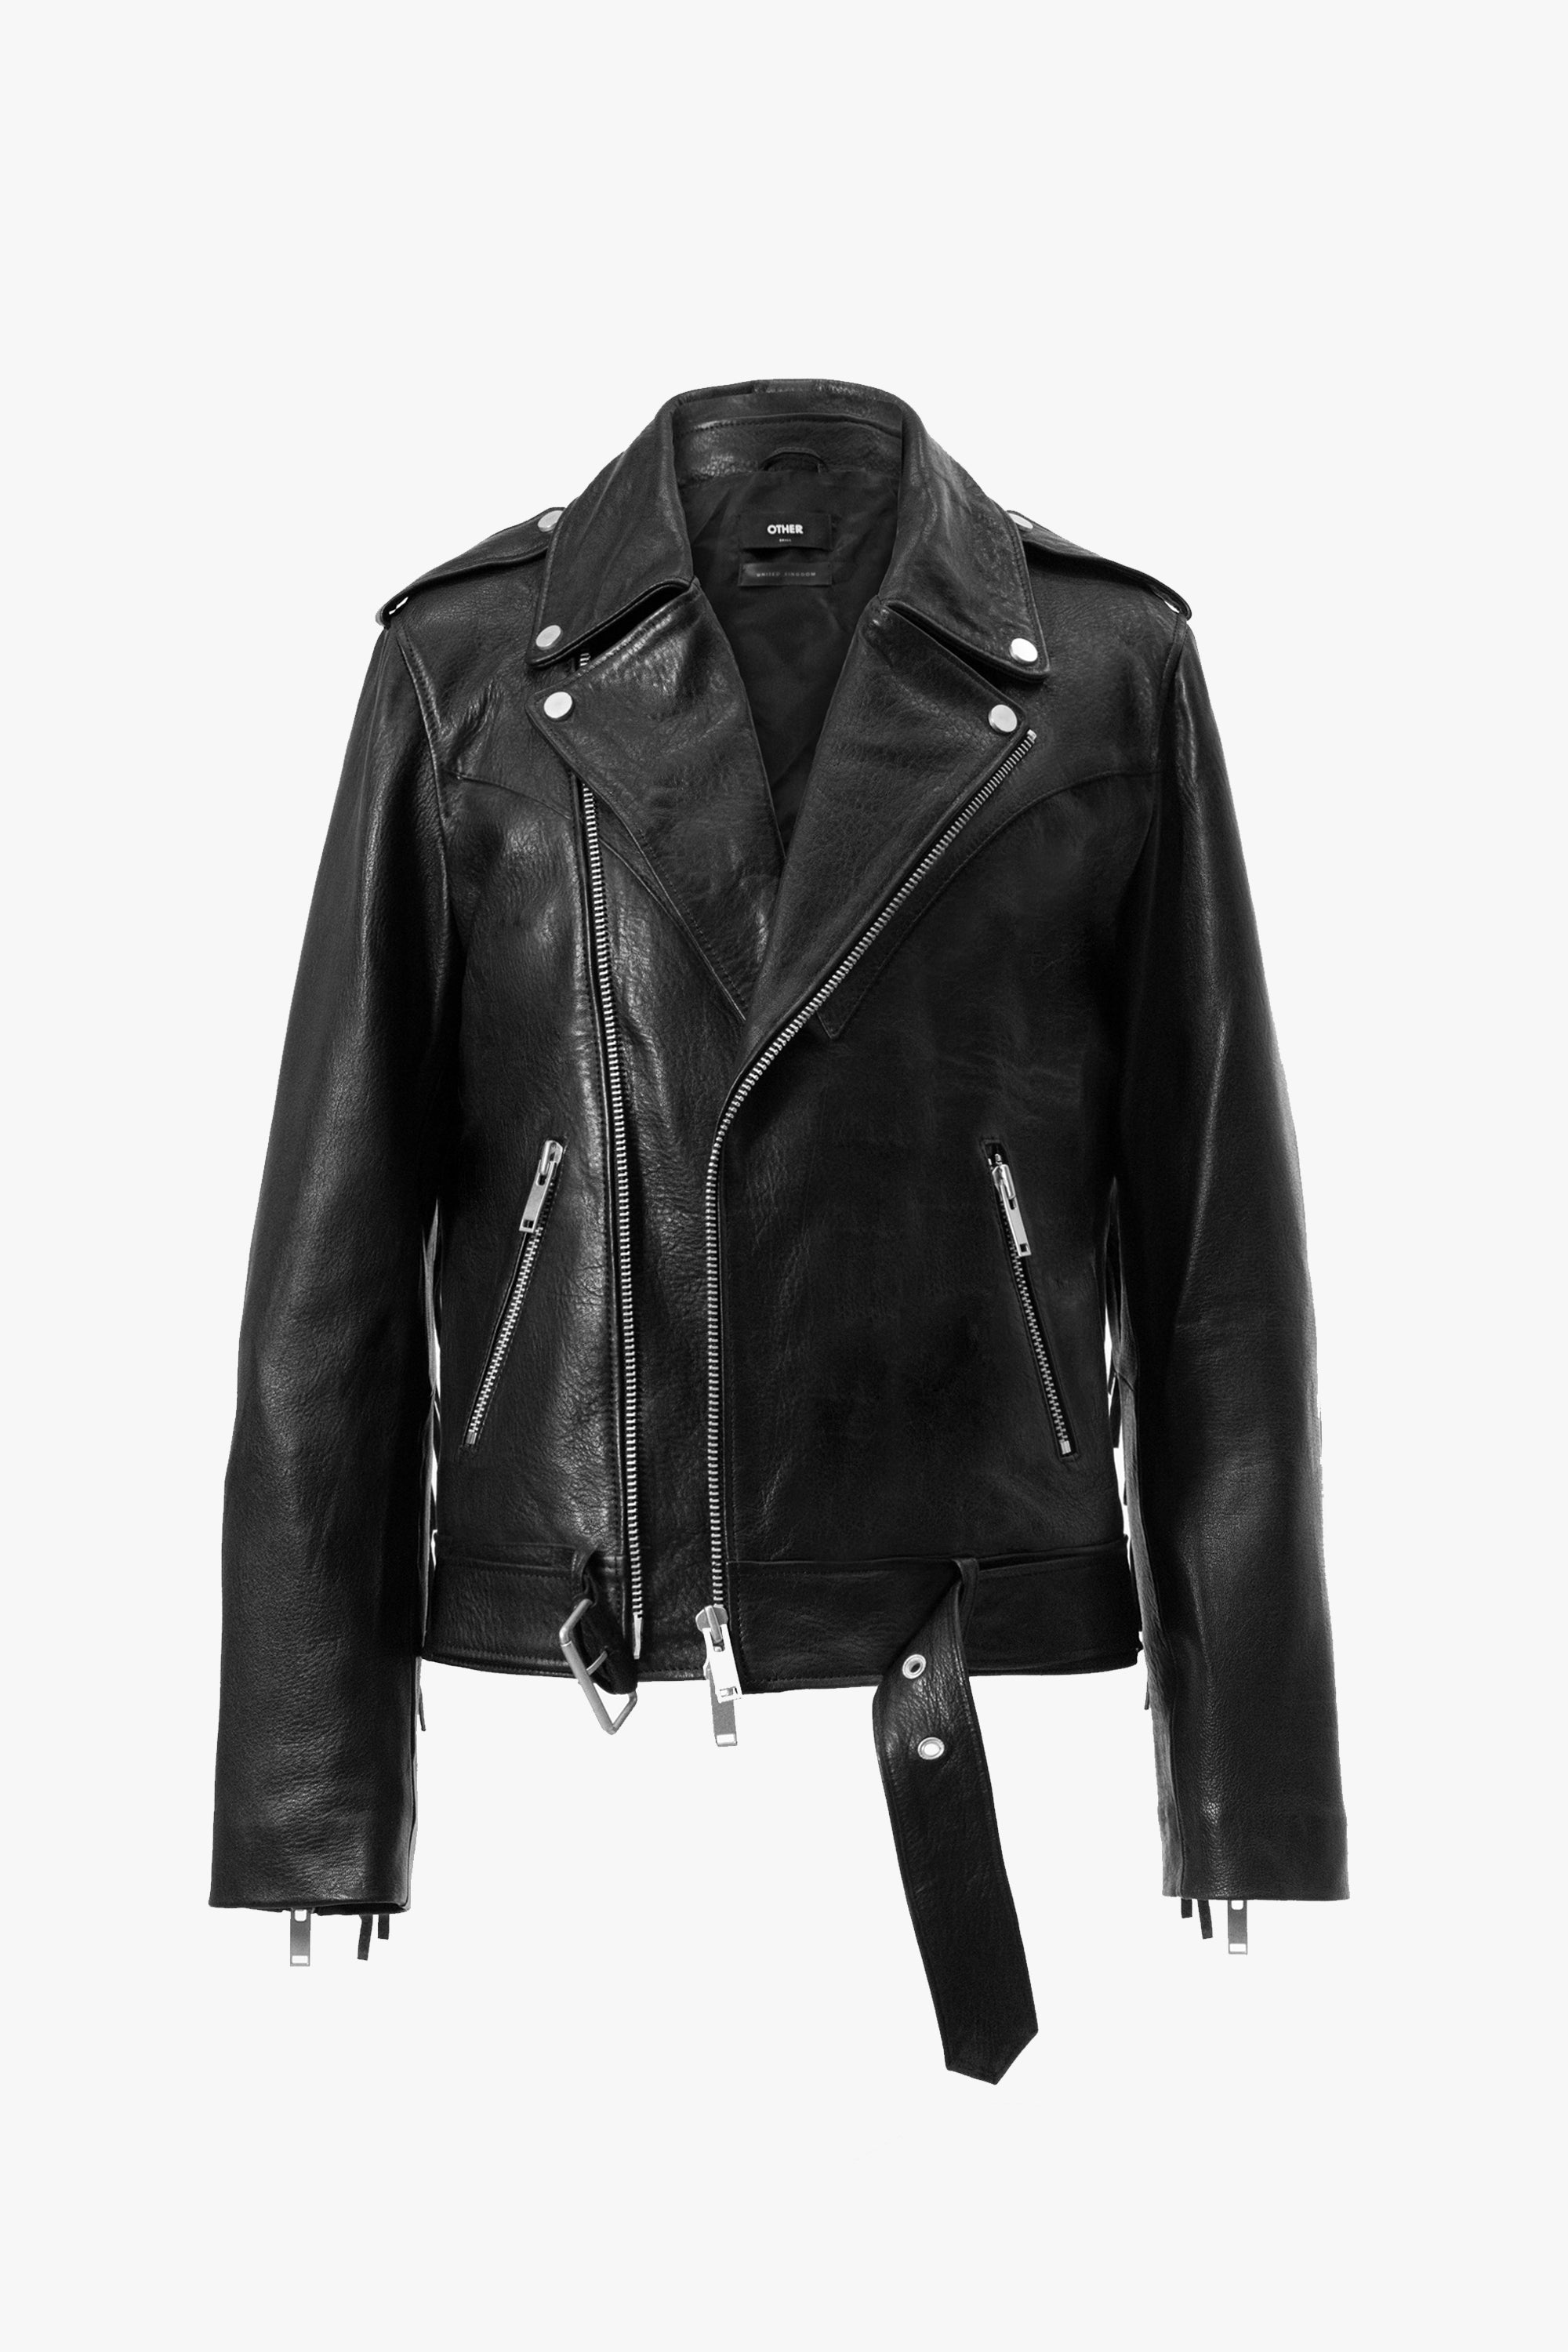 Outlaw Biker Jacket | Black Leather